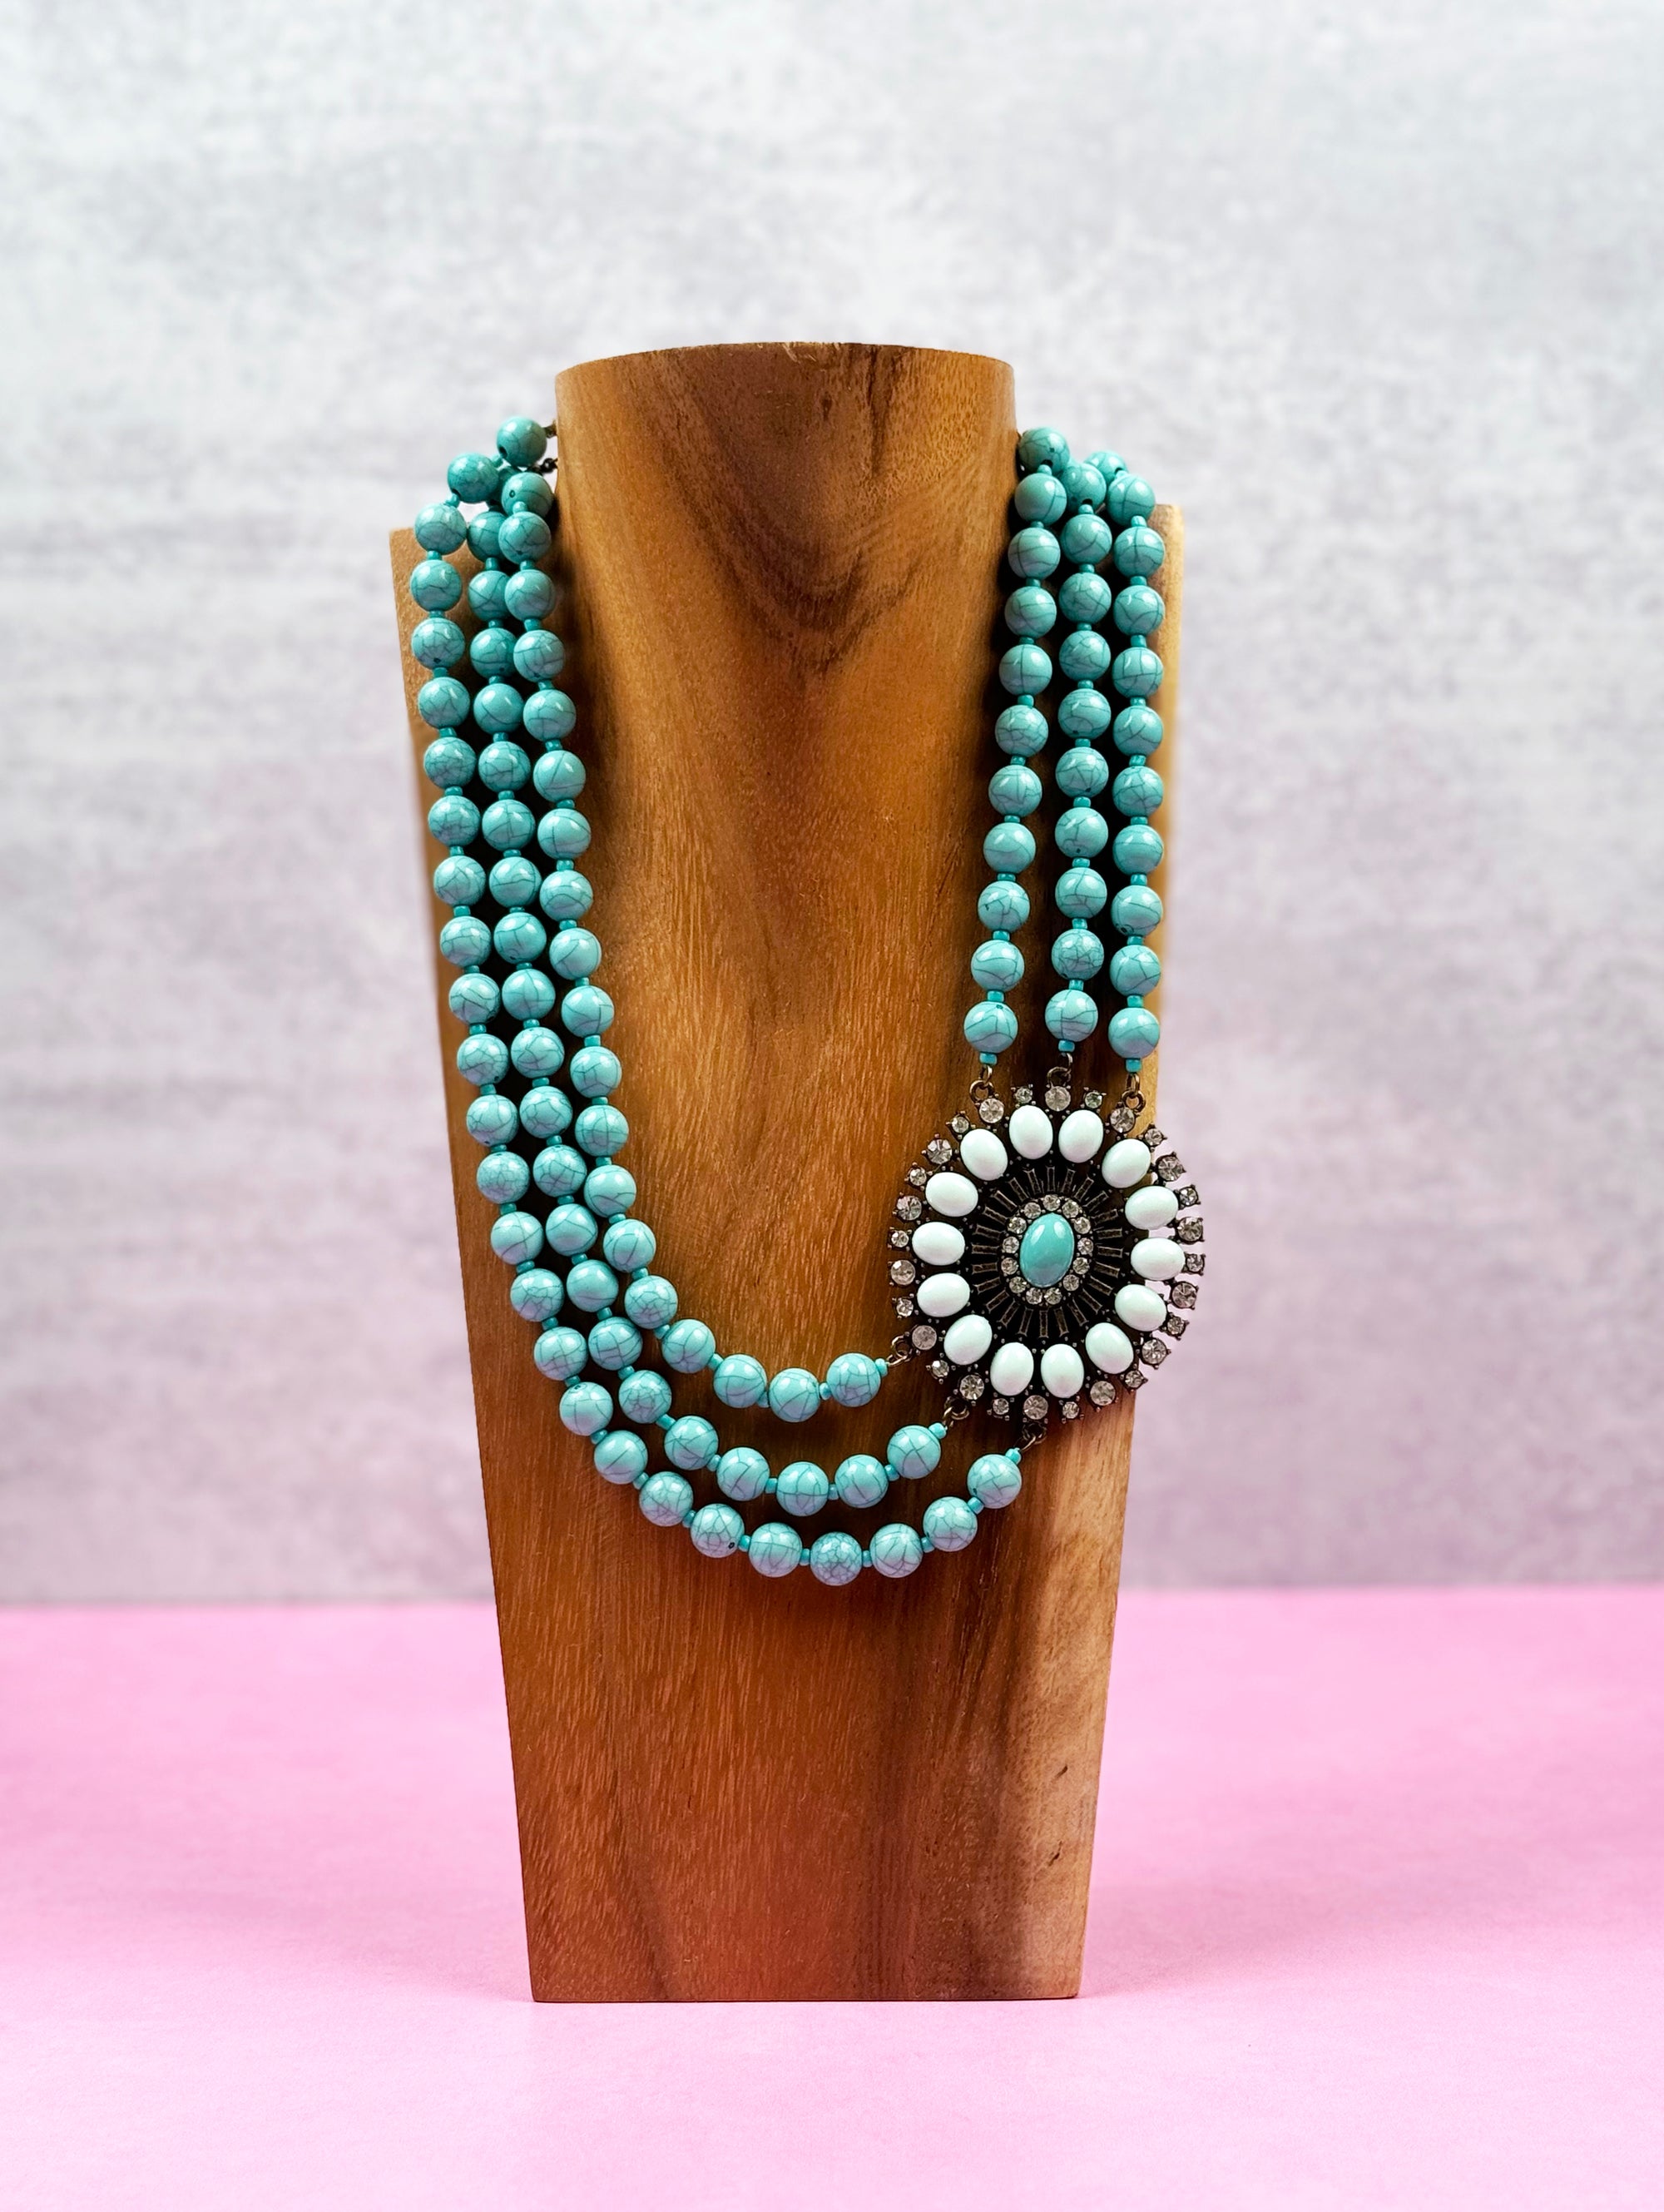 Turquoise and Rhinestone Embellishment Necklace